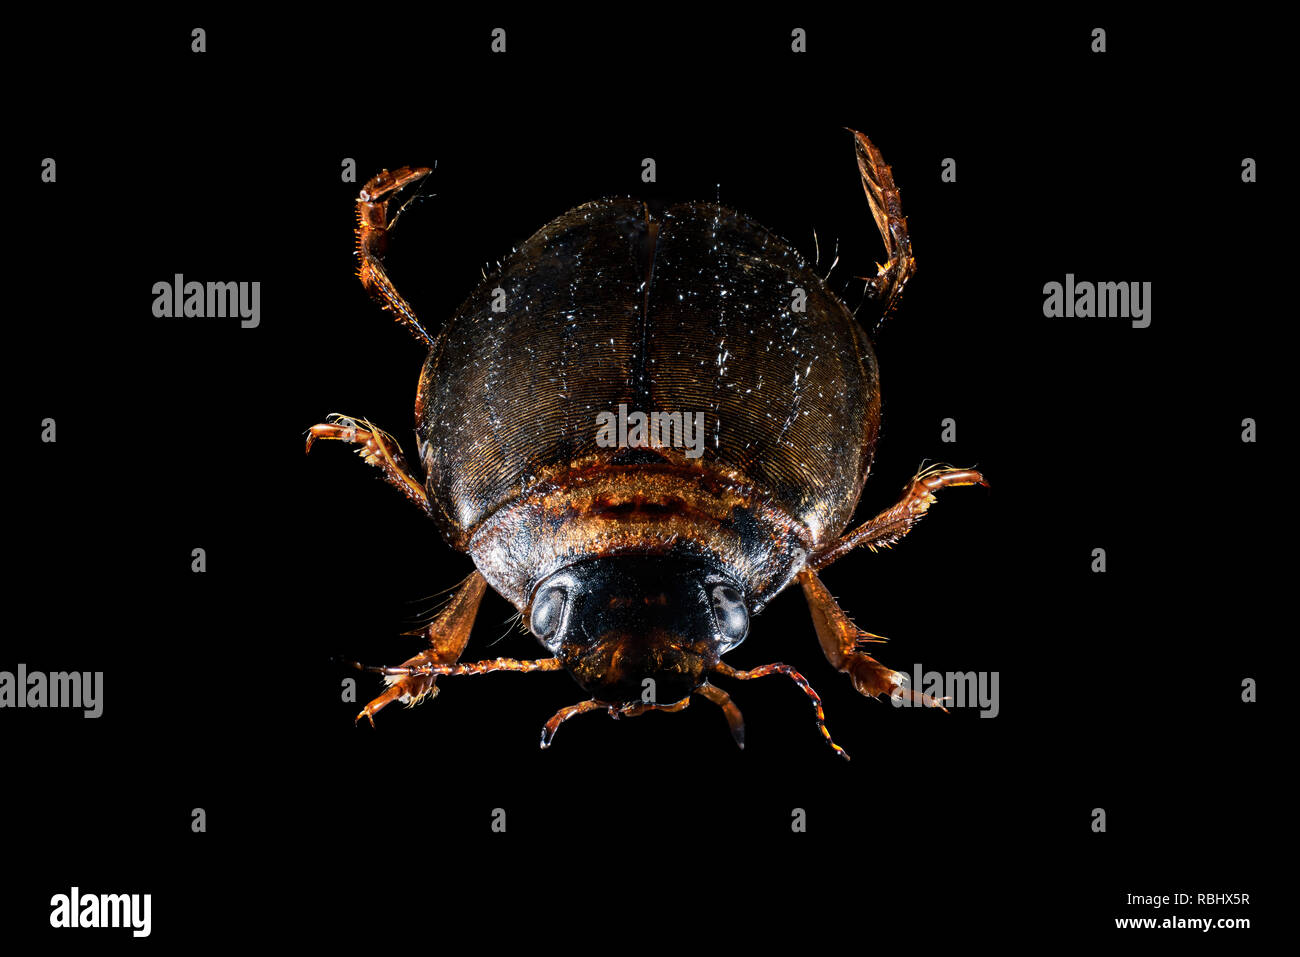 Wasser Käfer (agabus Dytiscidae bipustulatus) aus der Familie. Dytiscidae eine der größten und häufigsten Gruppen aquatischer Käfer. Stockfoto